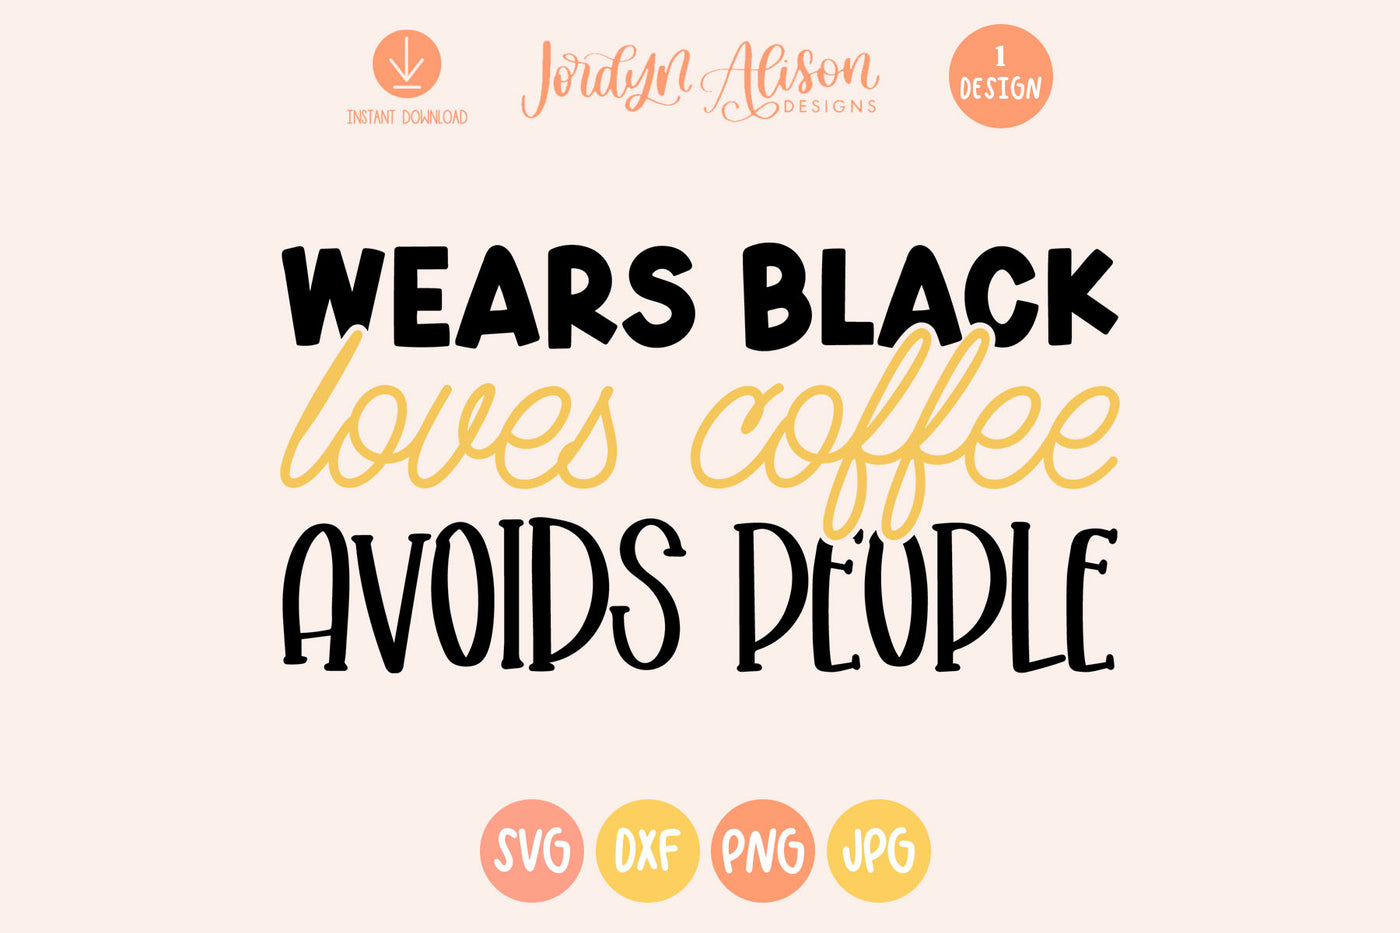 Wears Black Loves Coffee Avoids People SVG